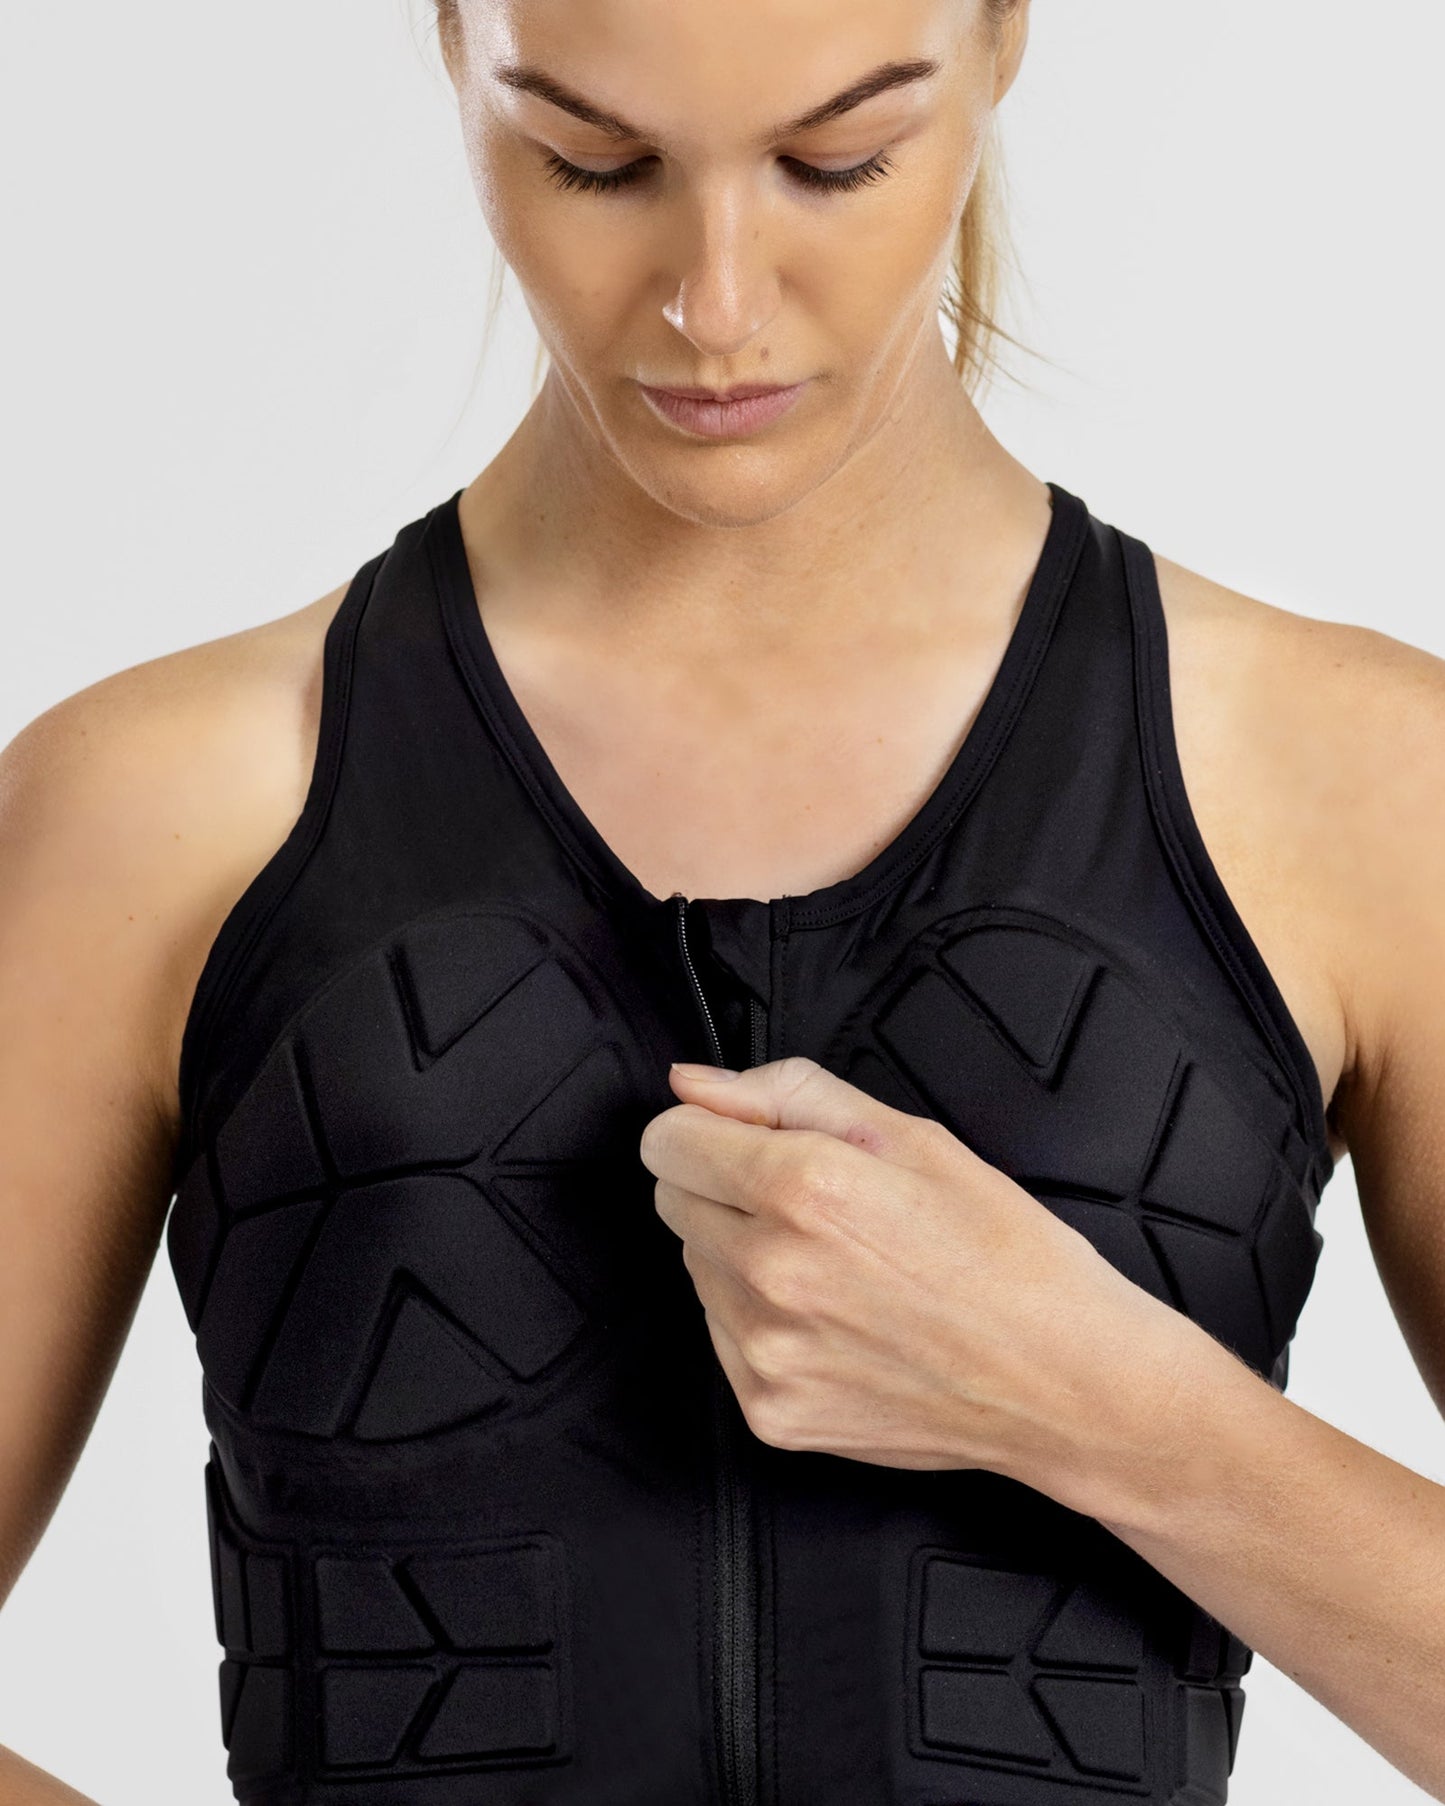 Zena Z1 Impact Protection Vest - Black